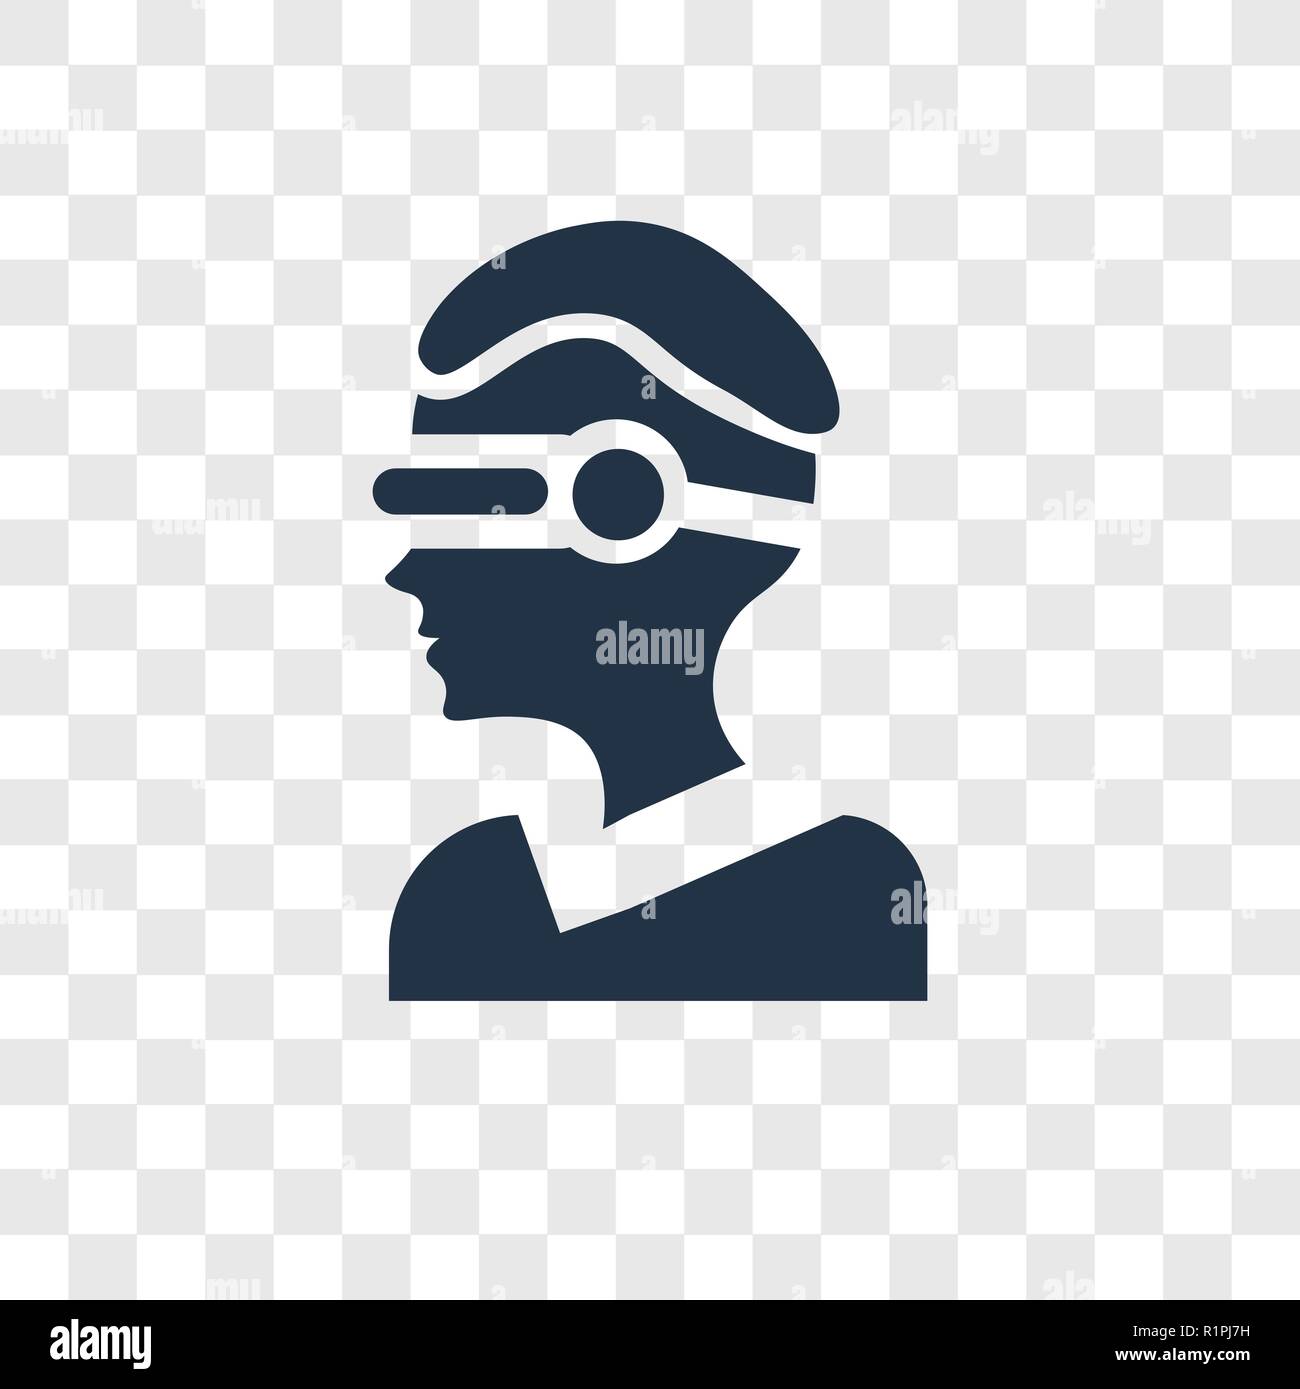 Vr-Brille vektor Icon auf transparentem Hintergrund isoliert, VR-Brille  Transparenz logo Konzept Stock-Vektorgrafik - Alamy